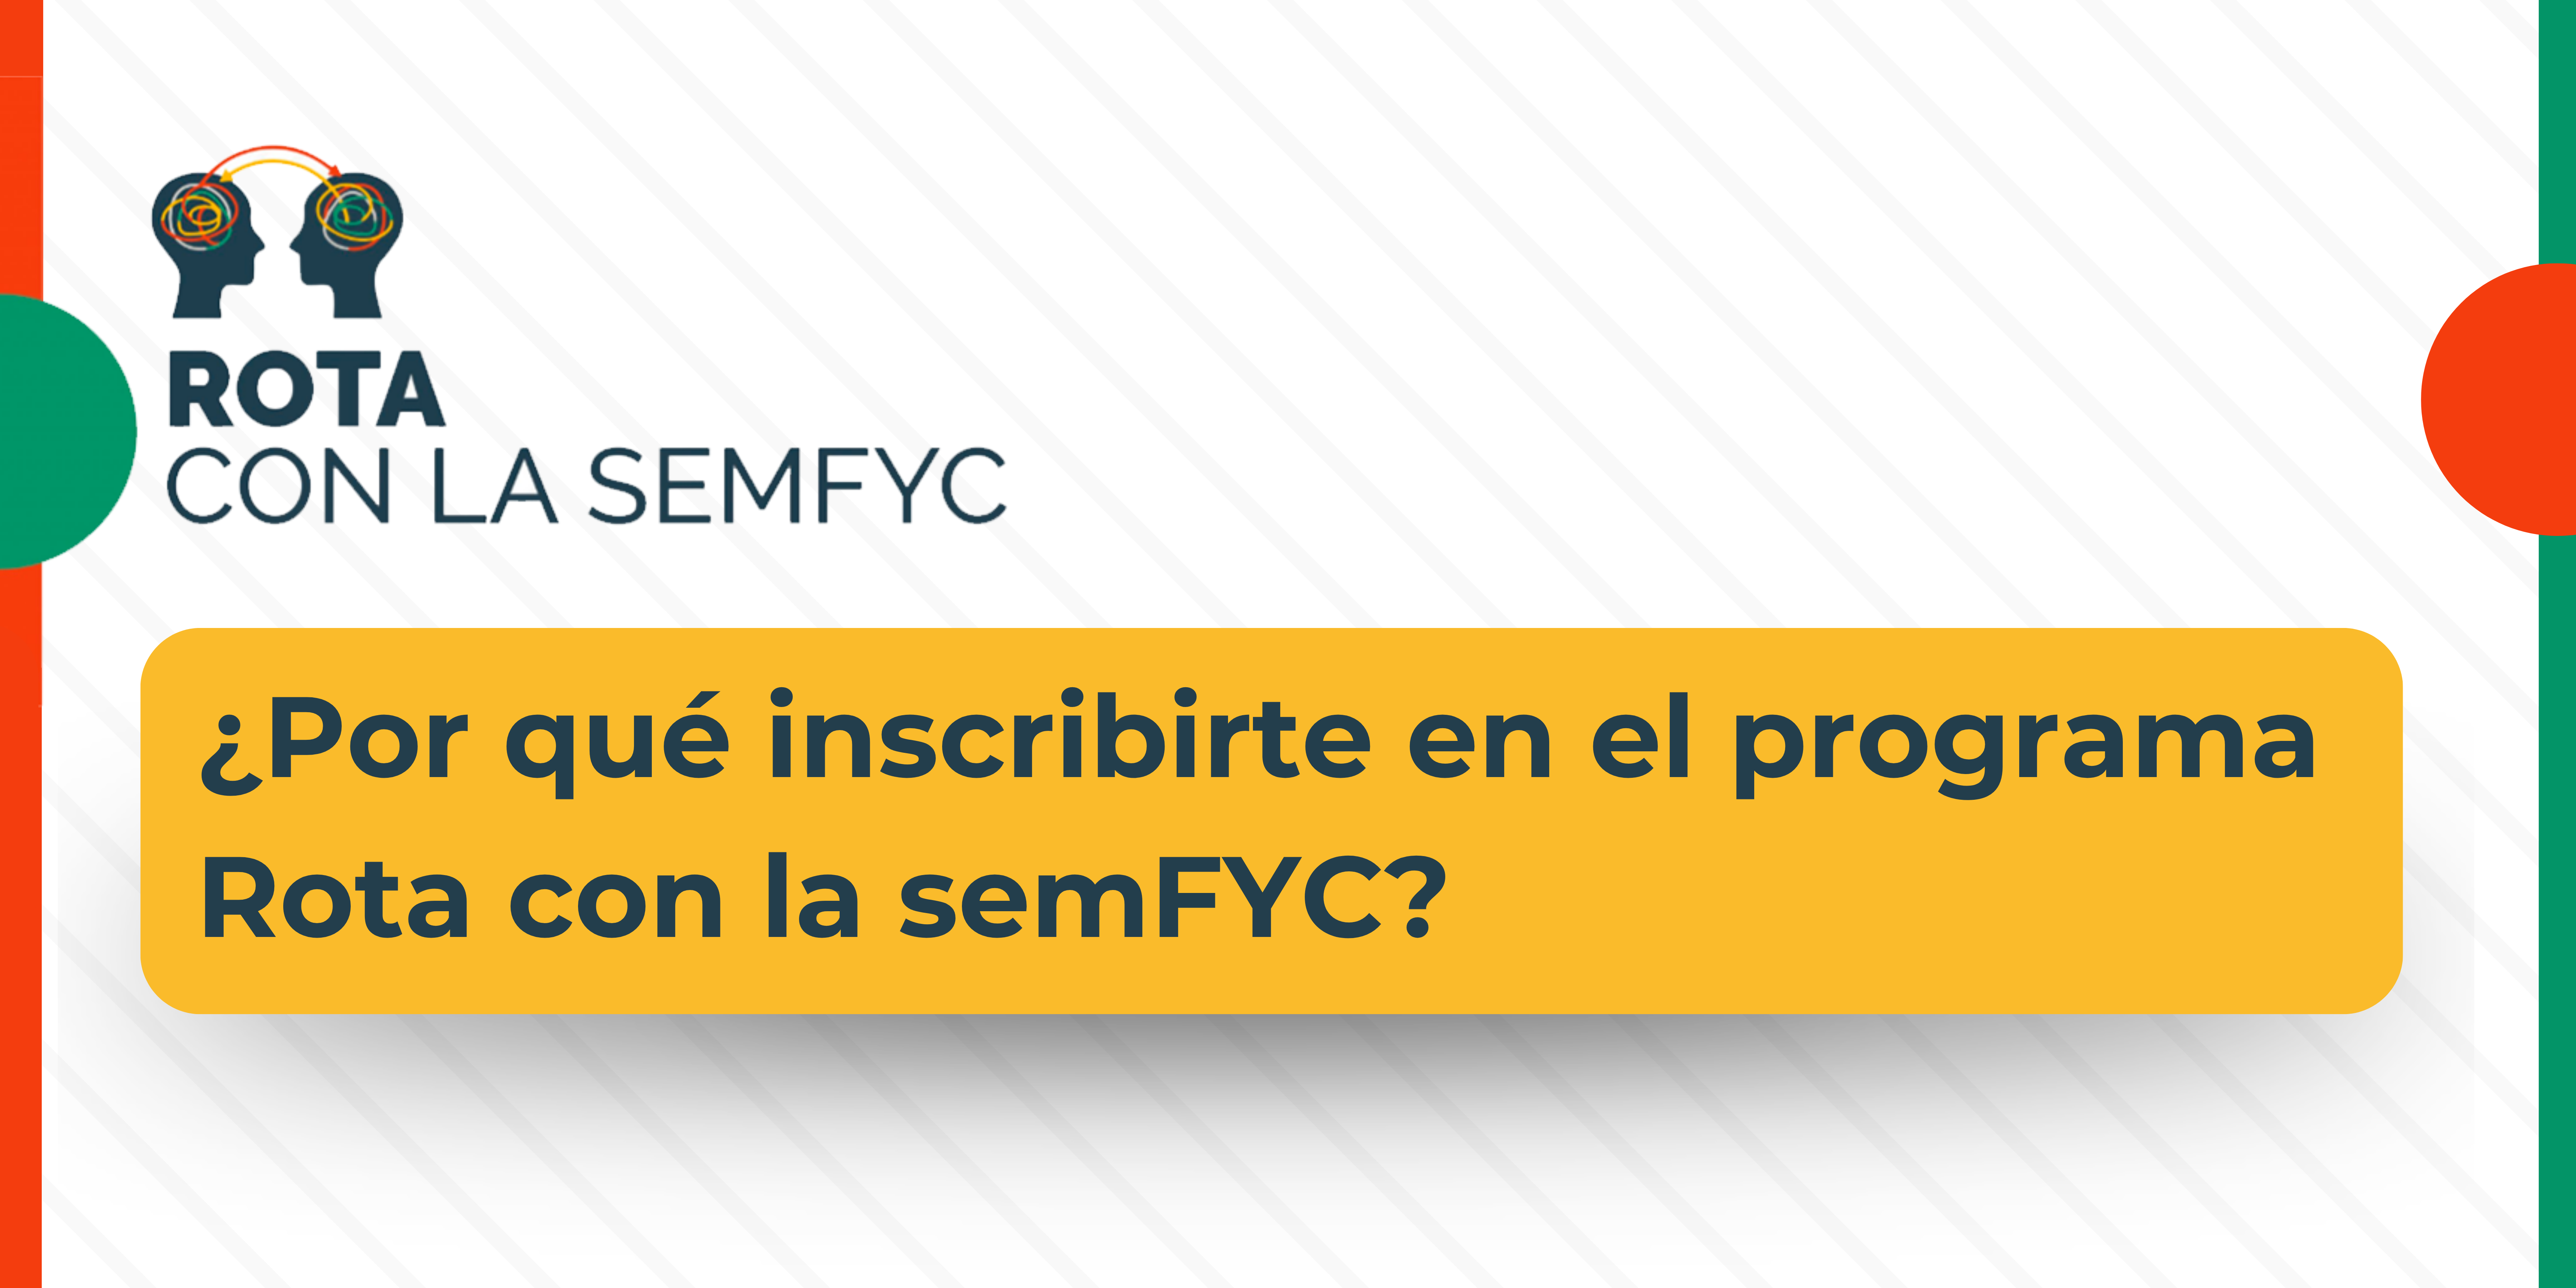 ¿Por qué inscribirte en el programa Rota con la semFYC?